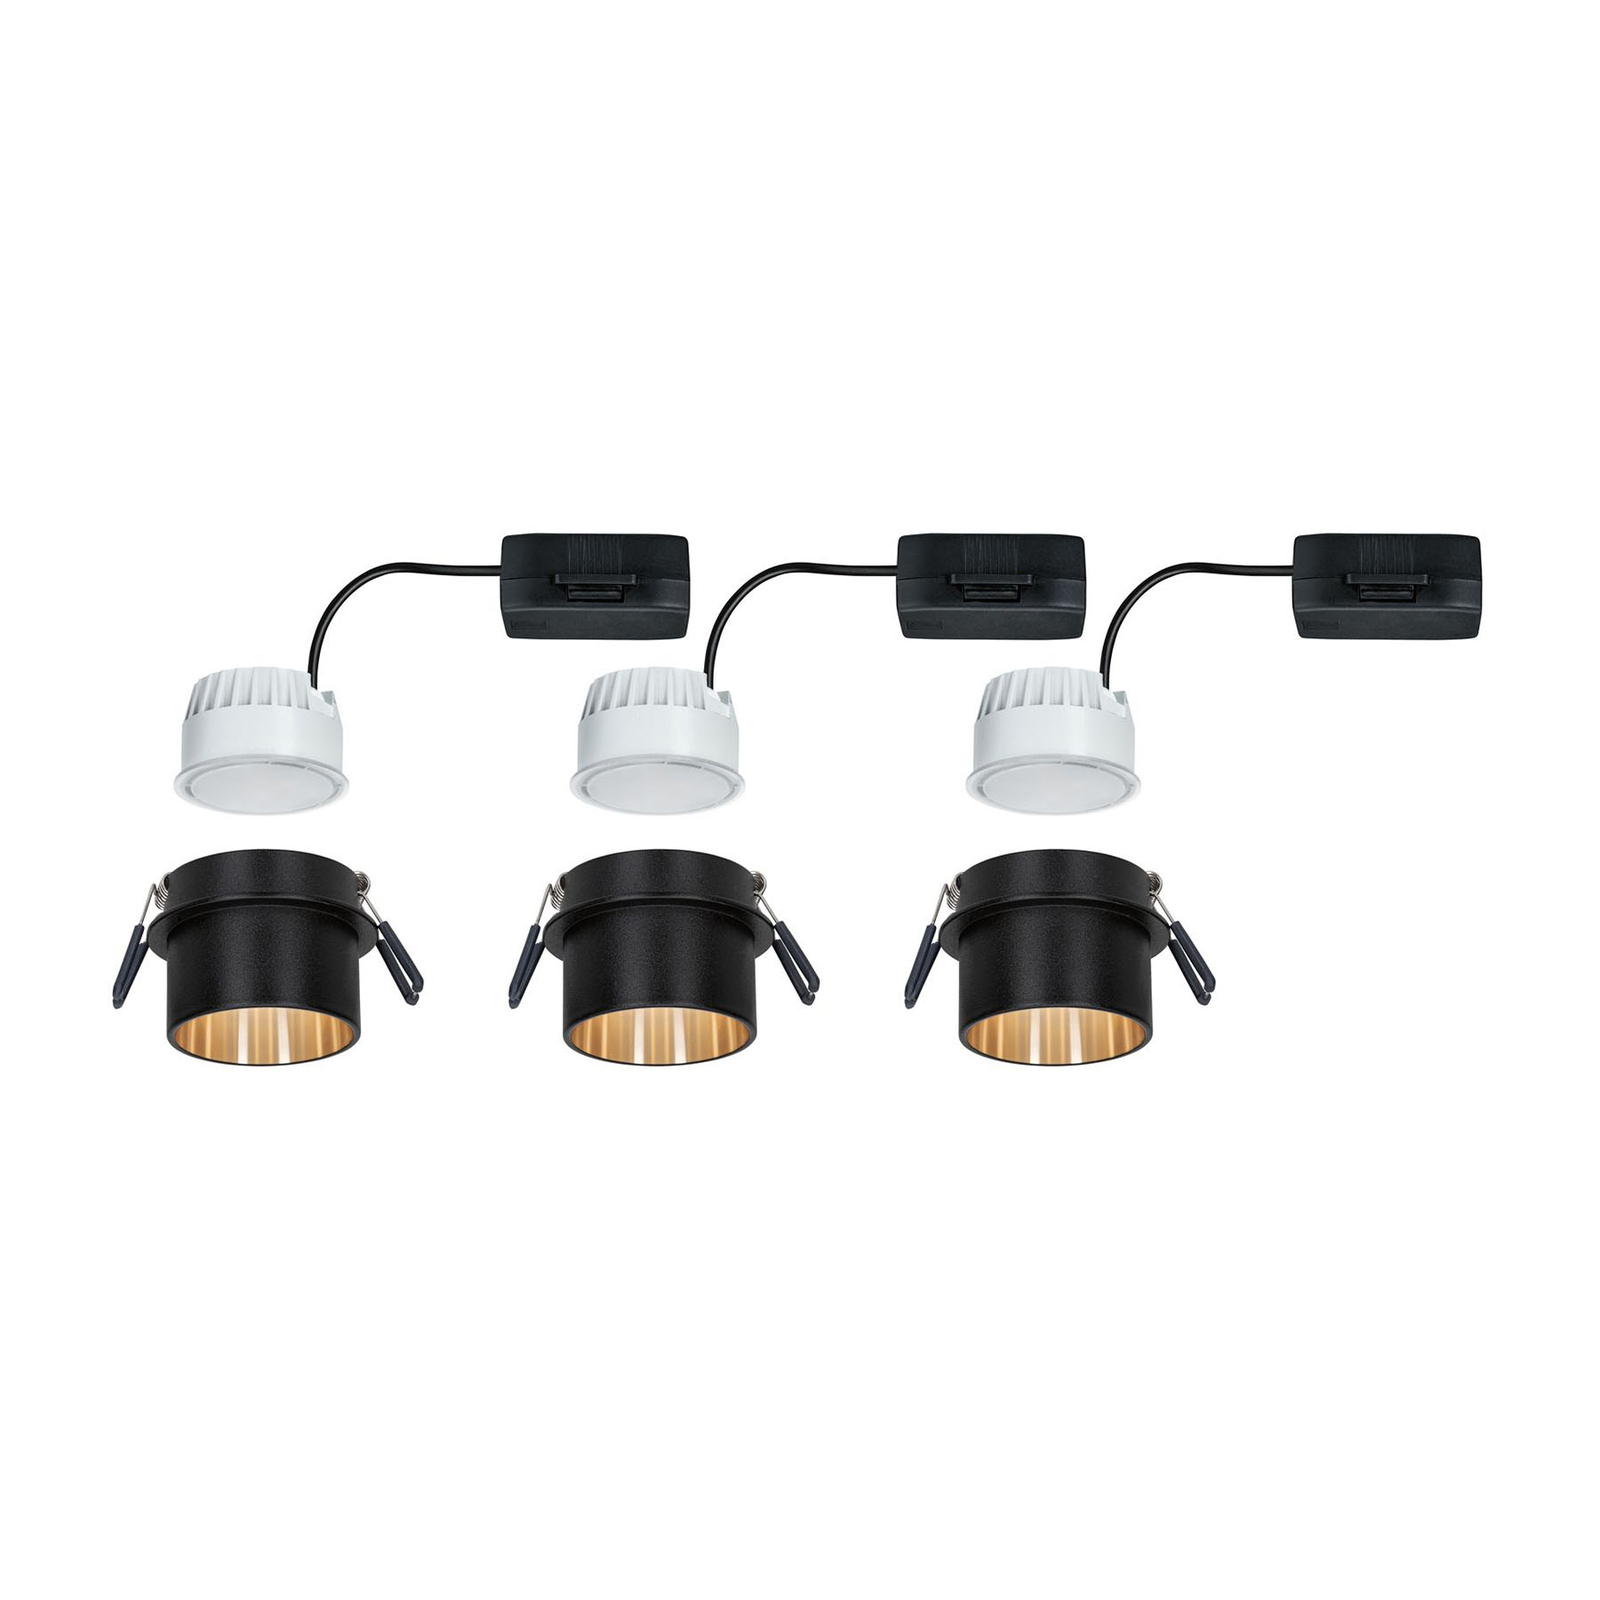 Paulmann Gil LED inbouwlamp zwart/goud 3 per set